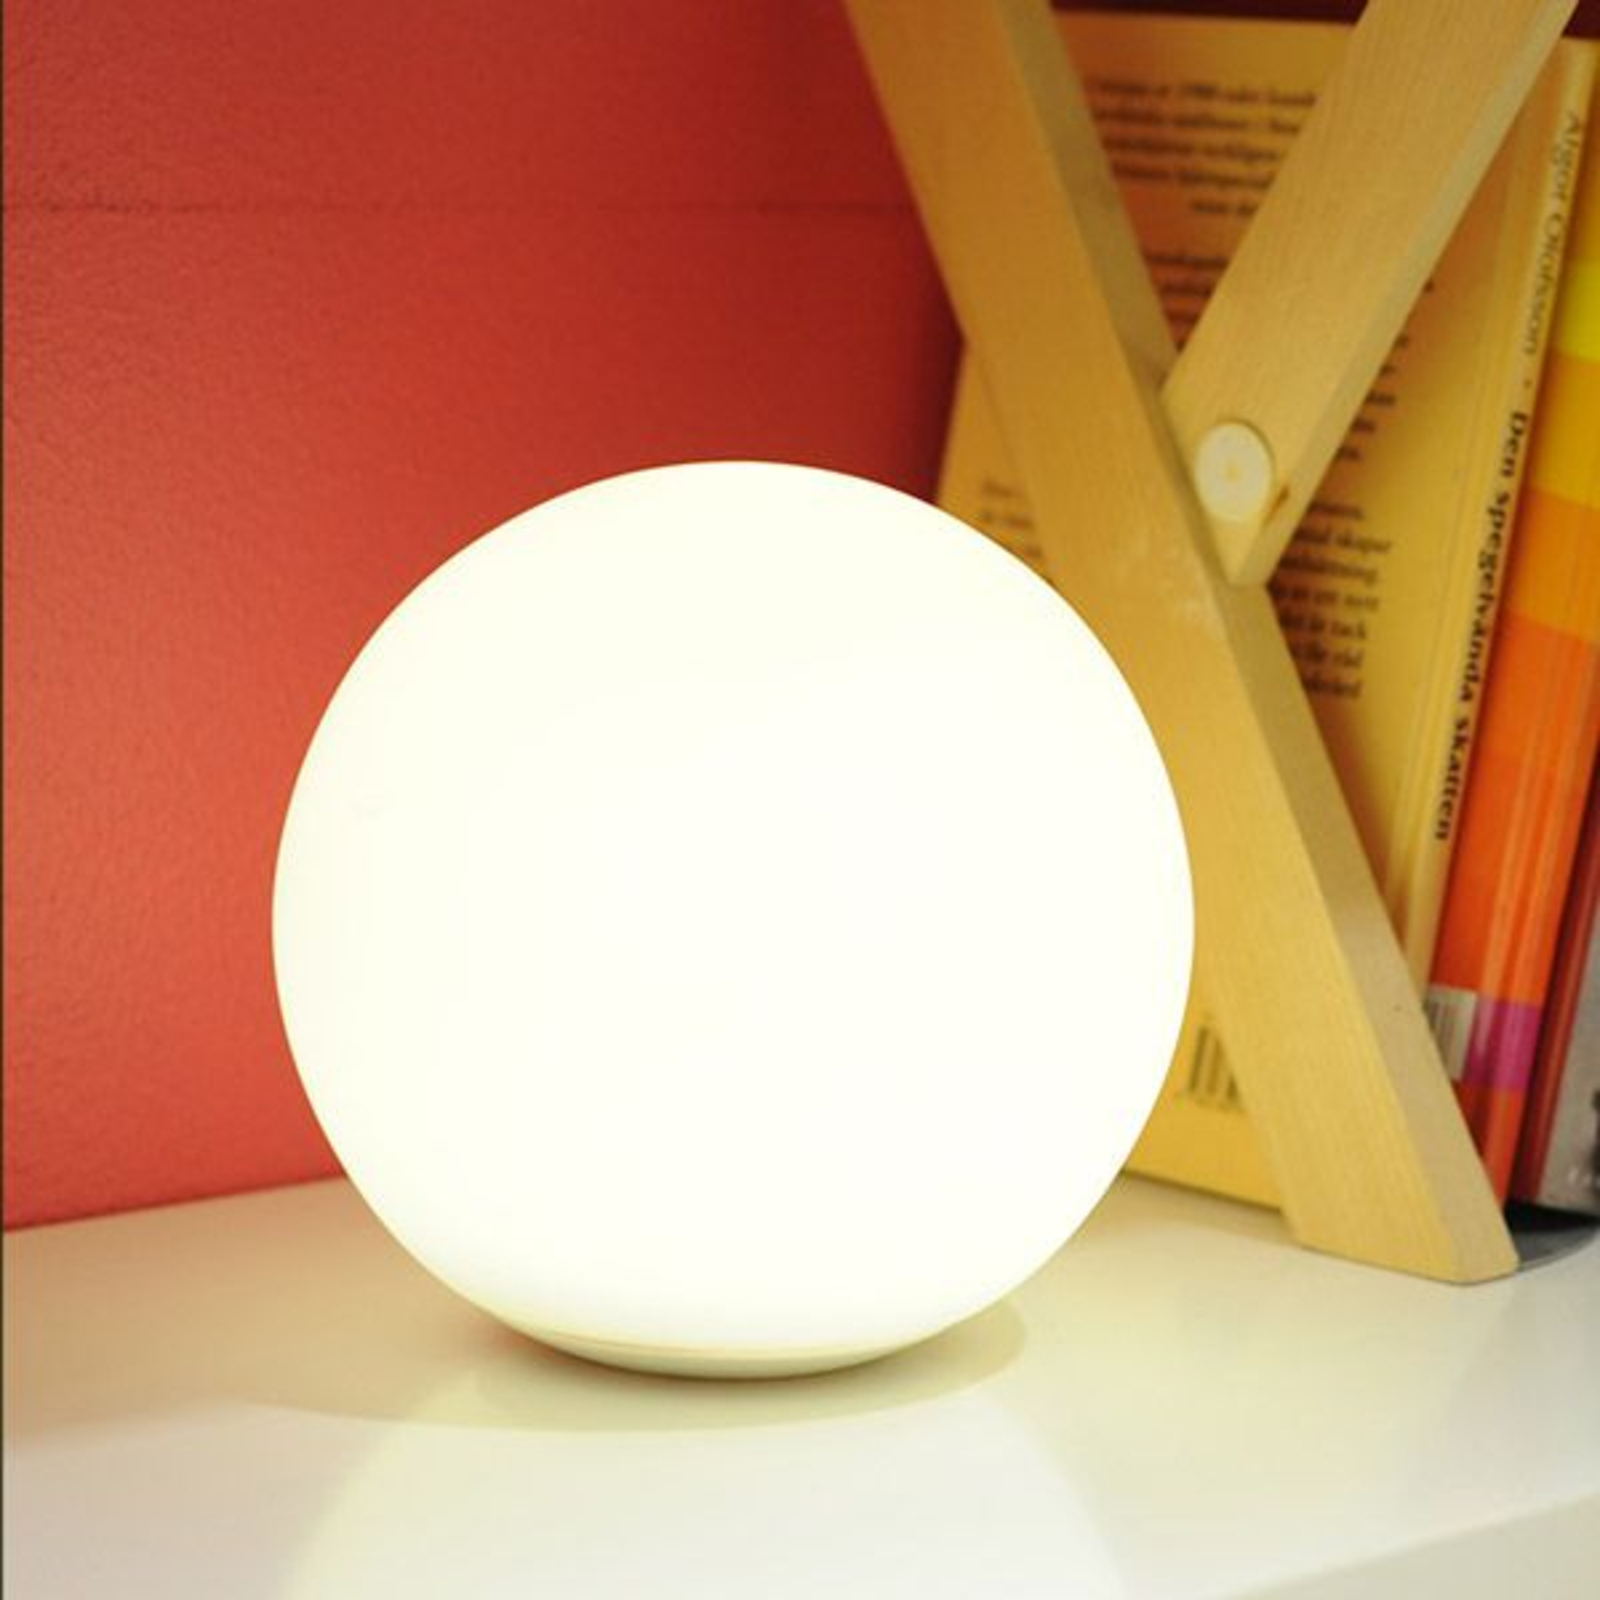 MiPow Playbulb Sphere lámpara esférica LED